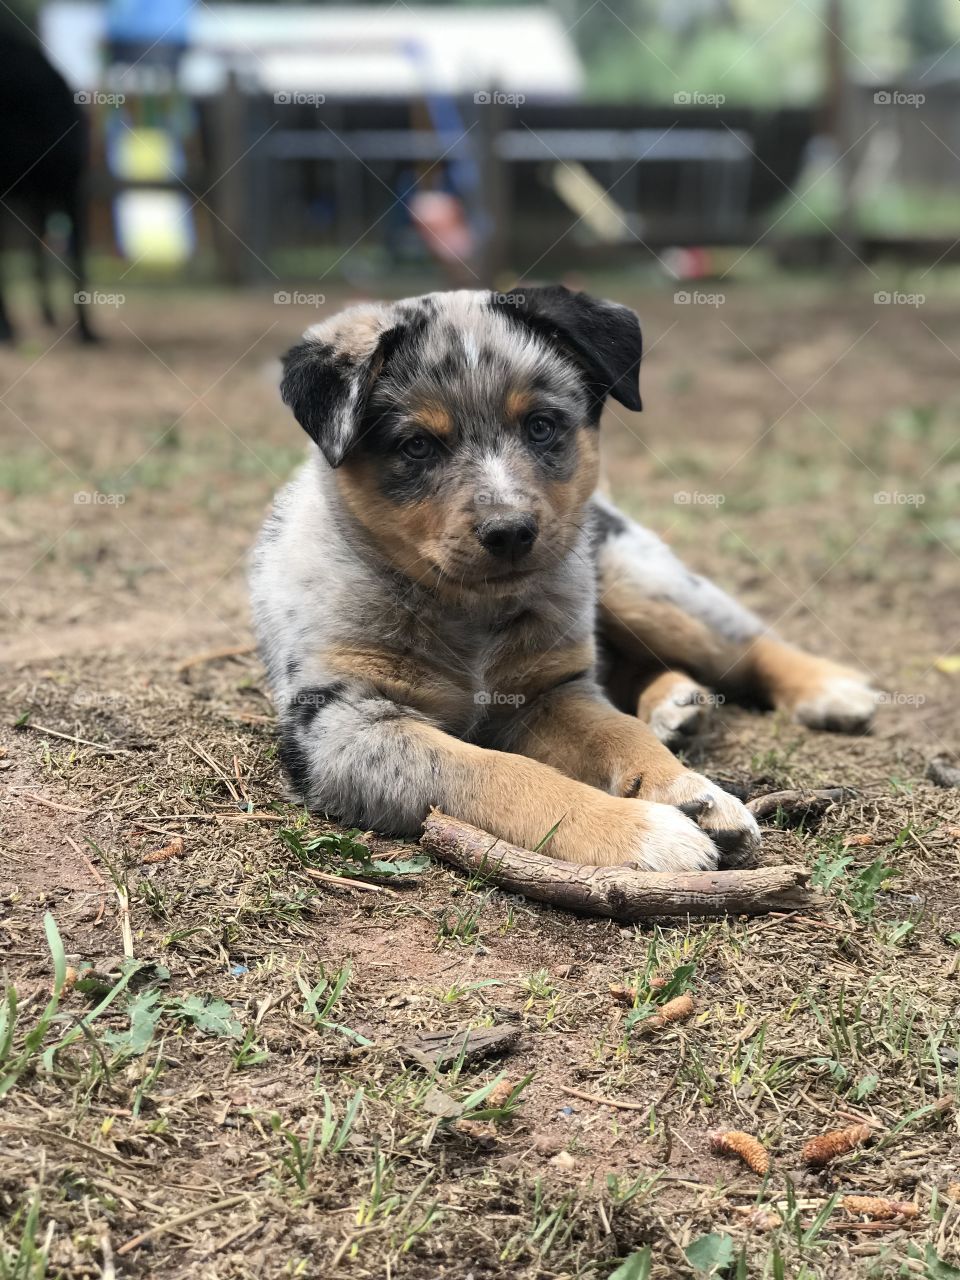 Texas Heeler puppy - Rex